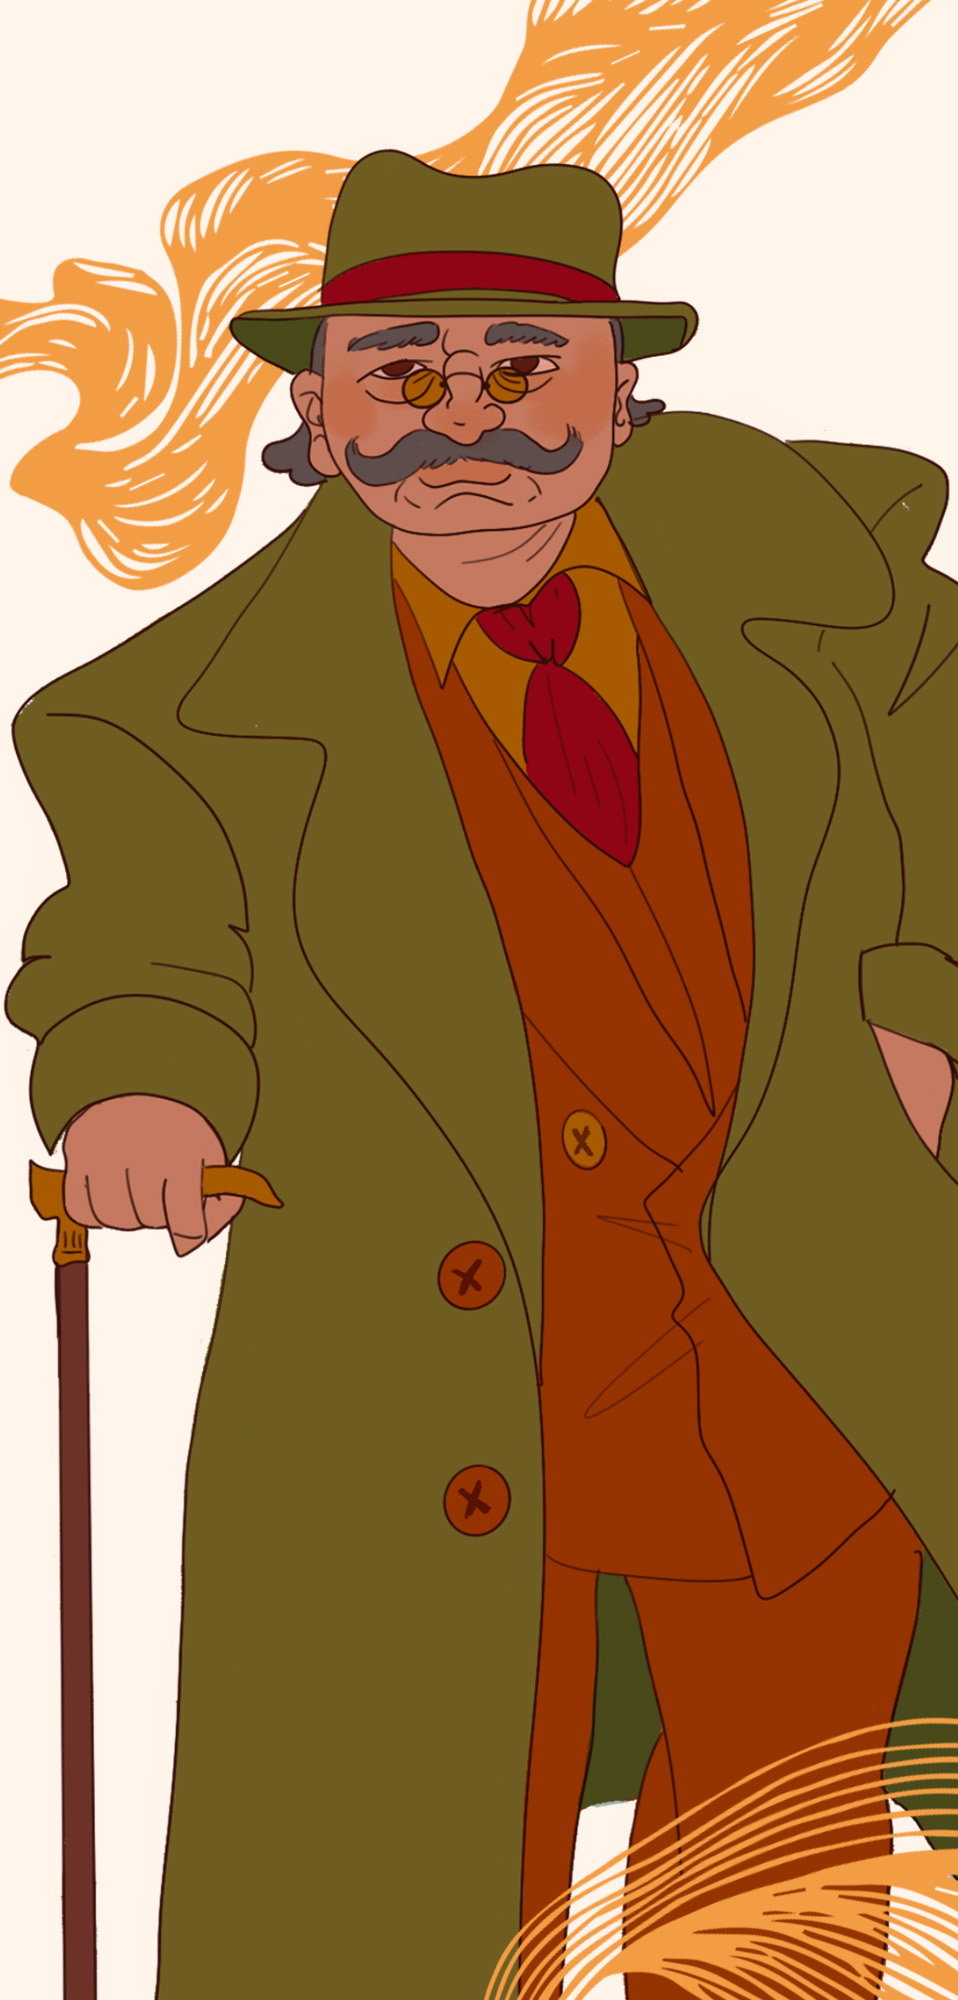 Un uomo di età alta con i baffi, gli occhiali e un cappello, si sorregge con un bastone.